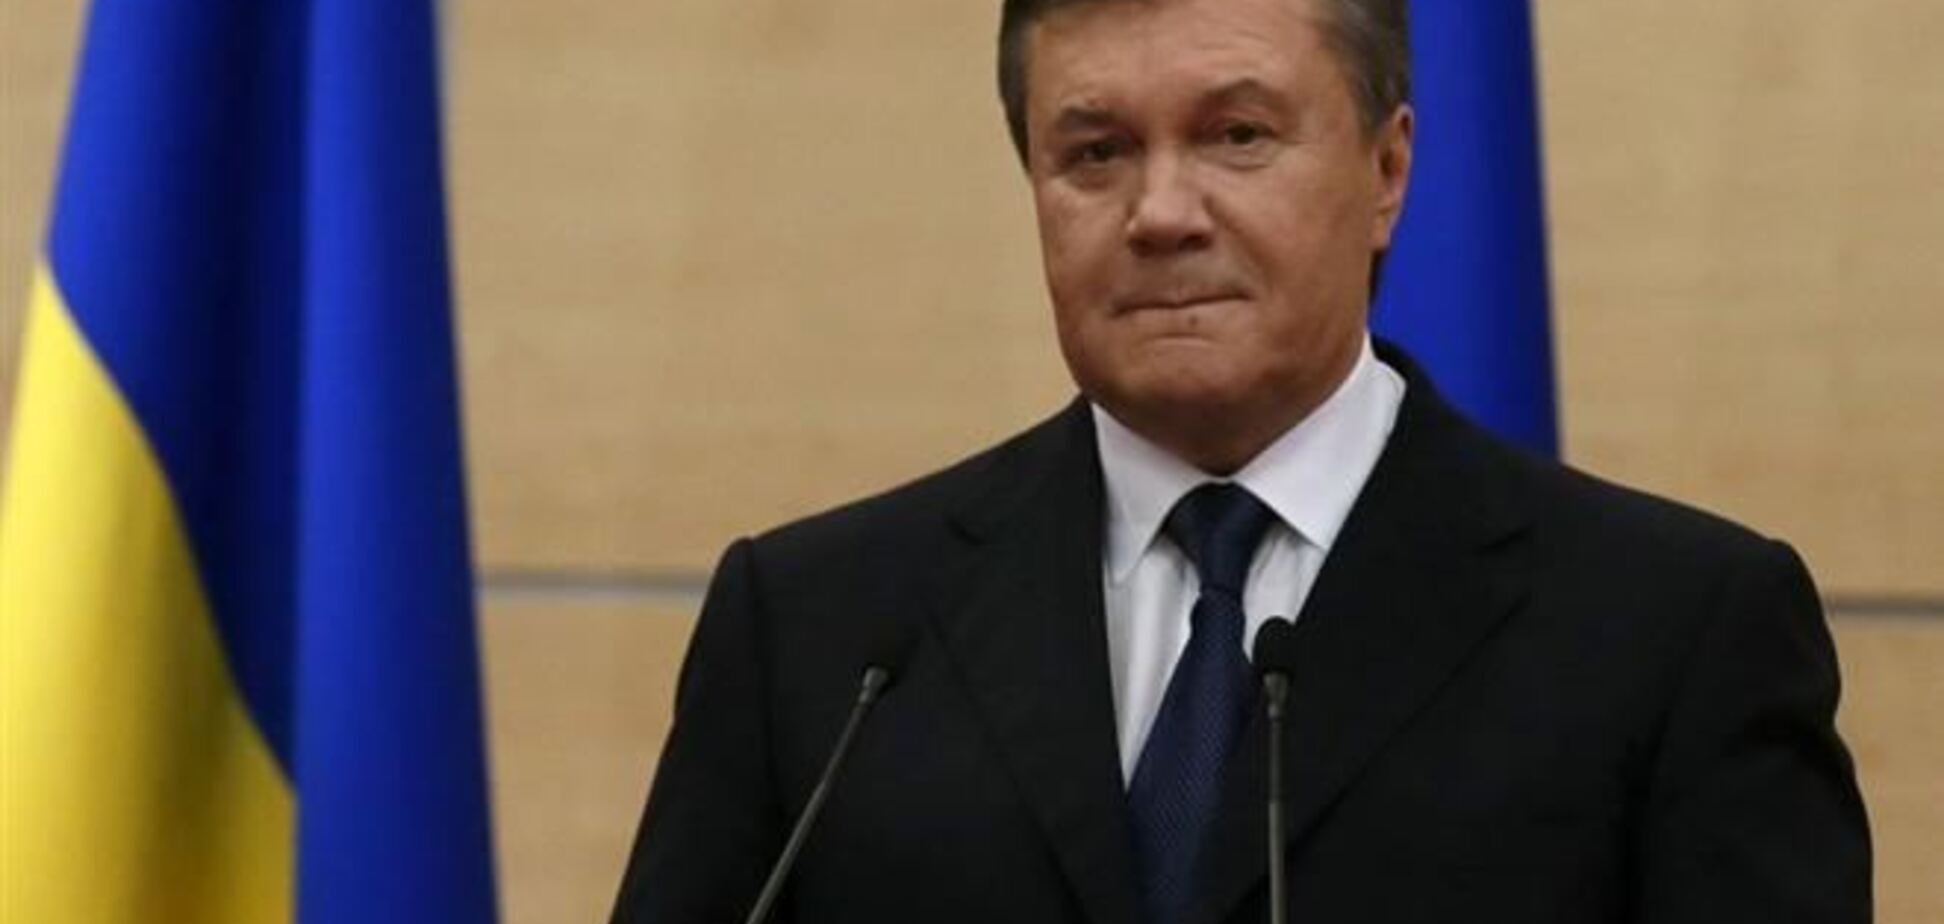 Янукович покинул Подмосковье и направился в Ростов - СМИ